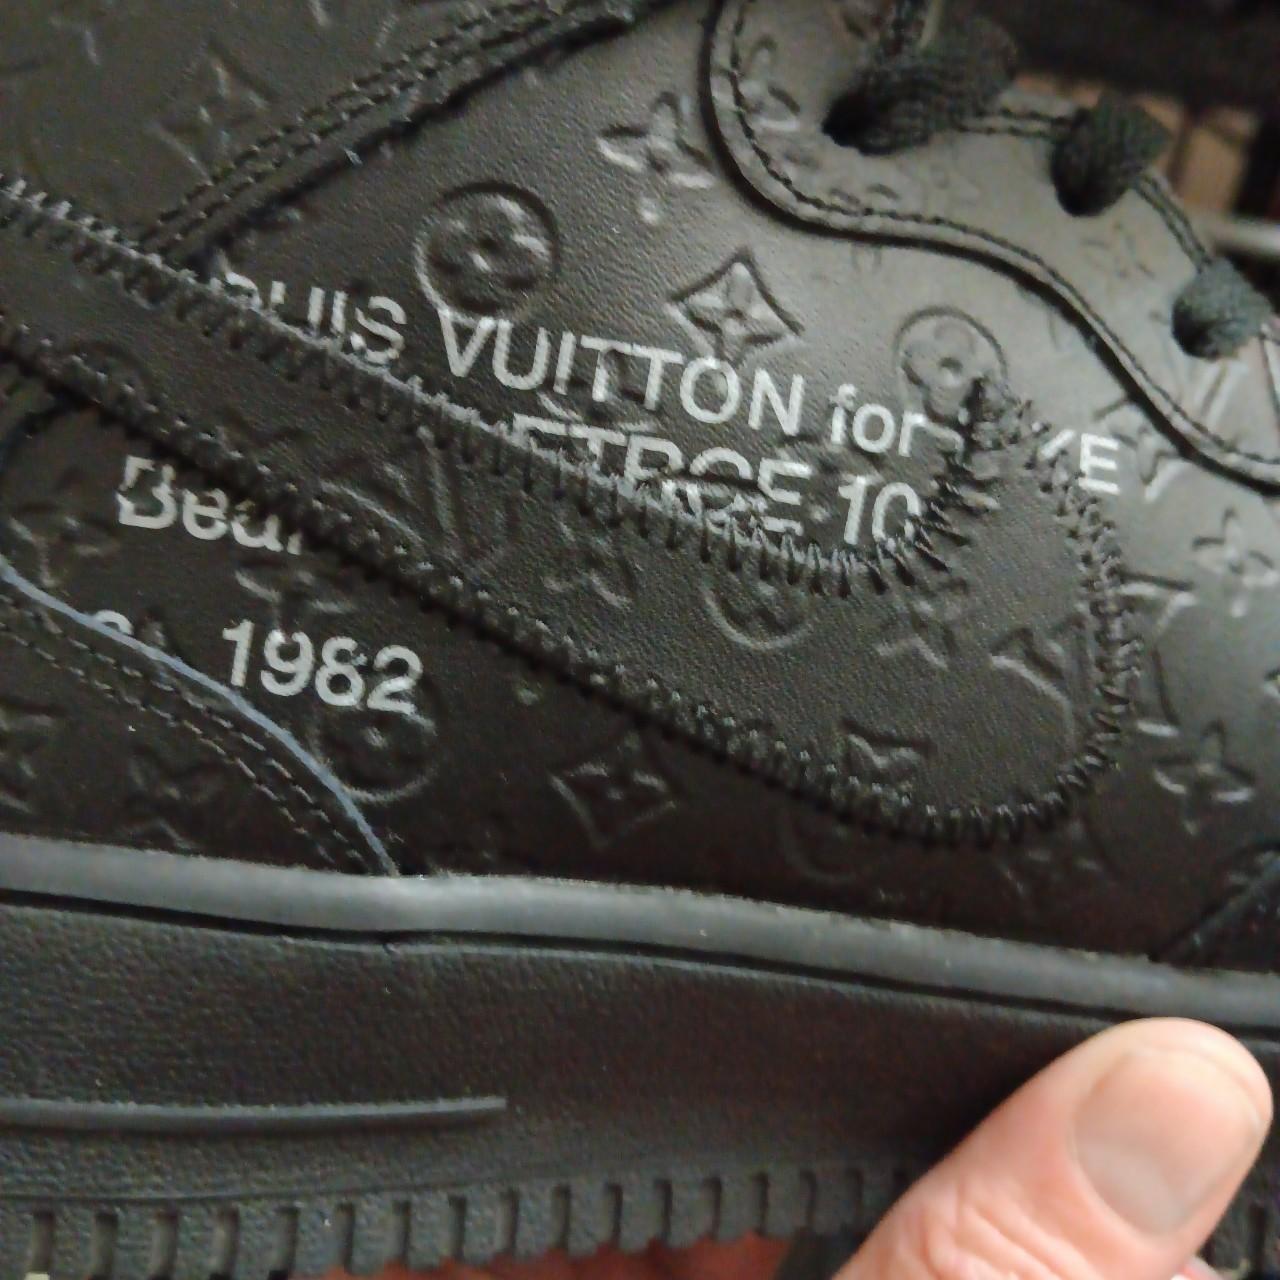 Men's Louis Vuitton Luxembourg Sneakers 100% - Depop